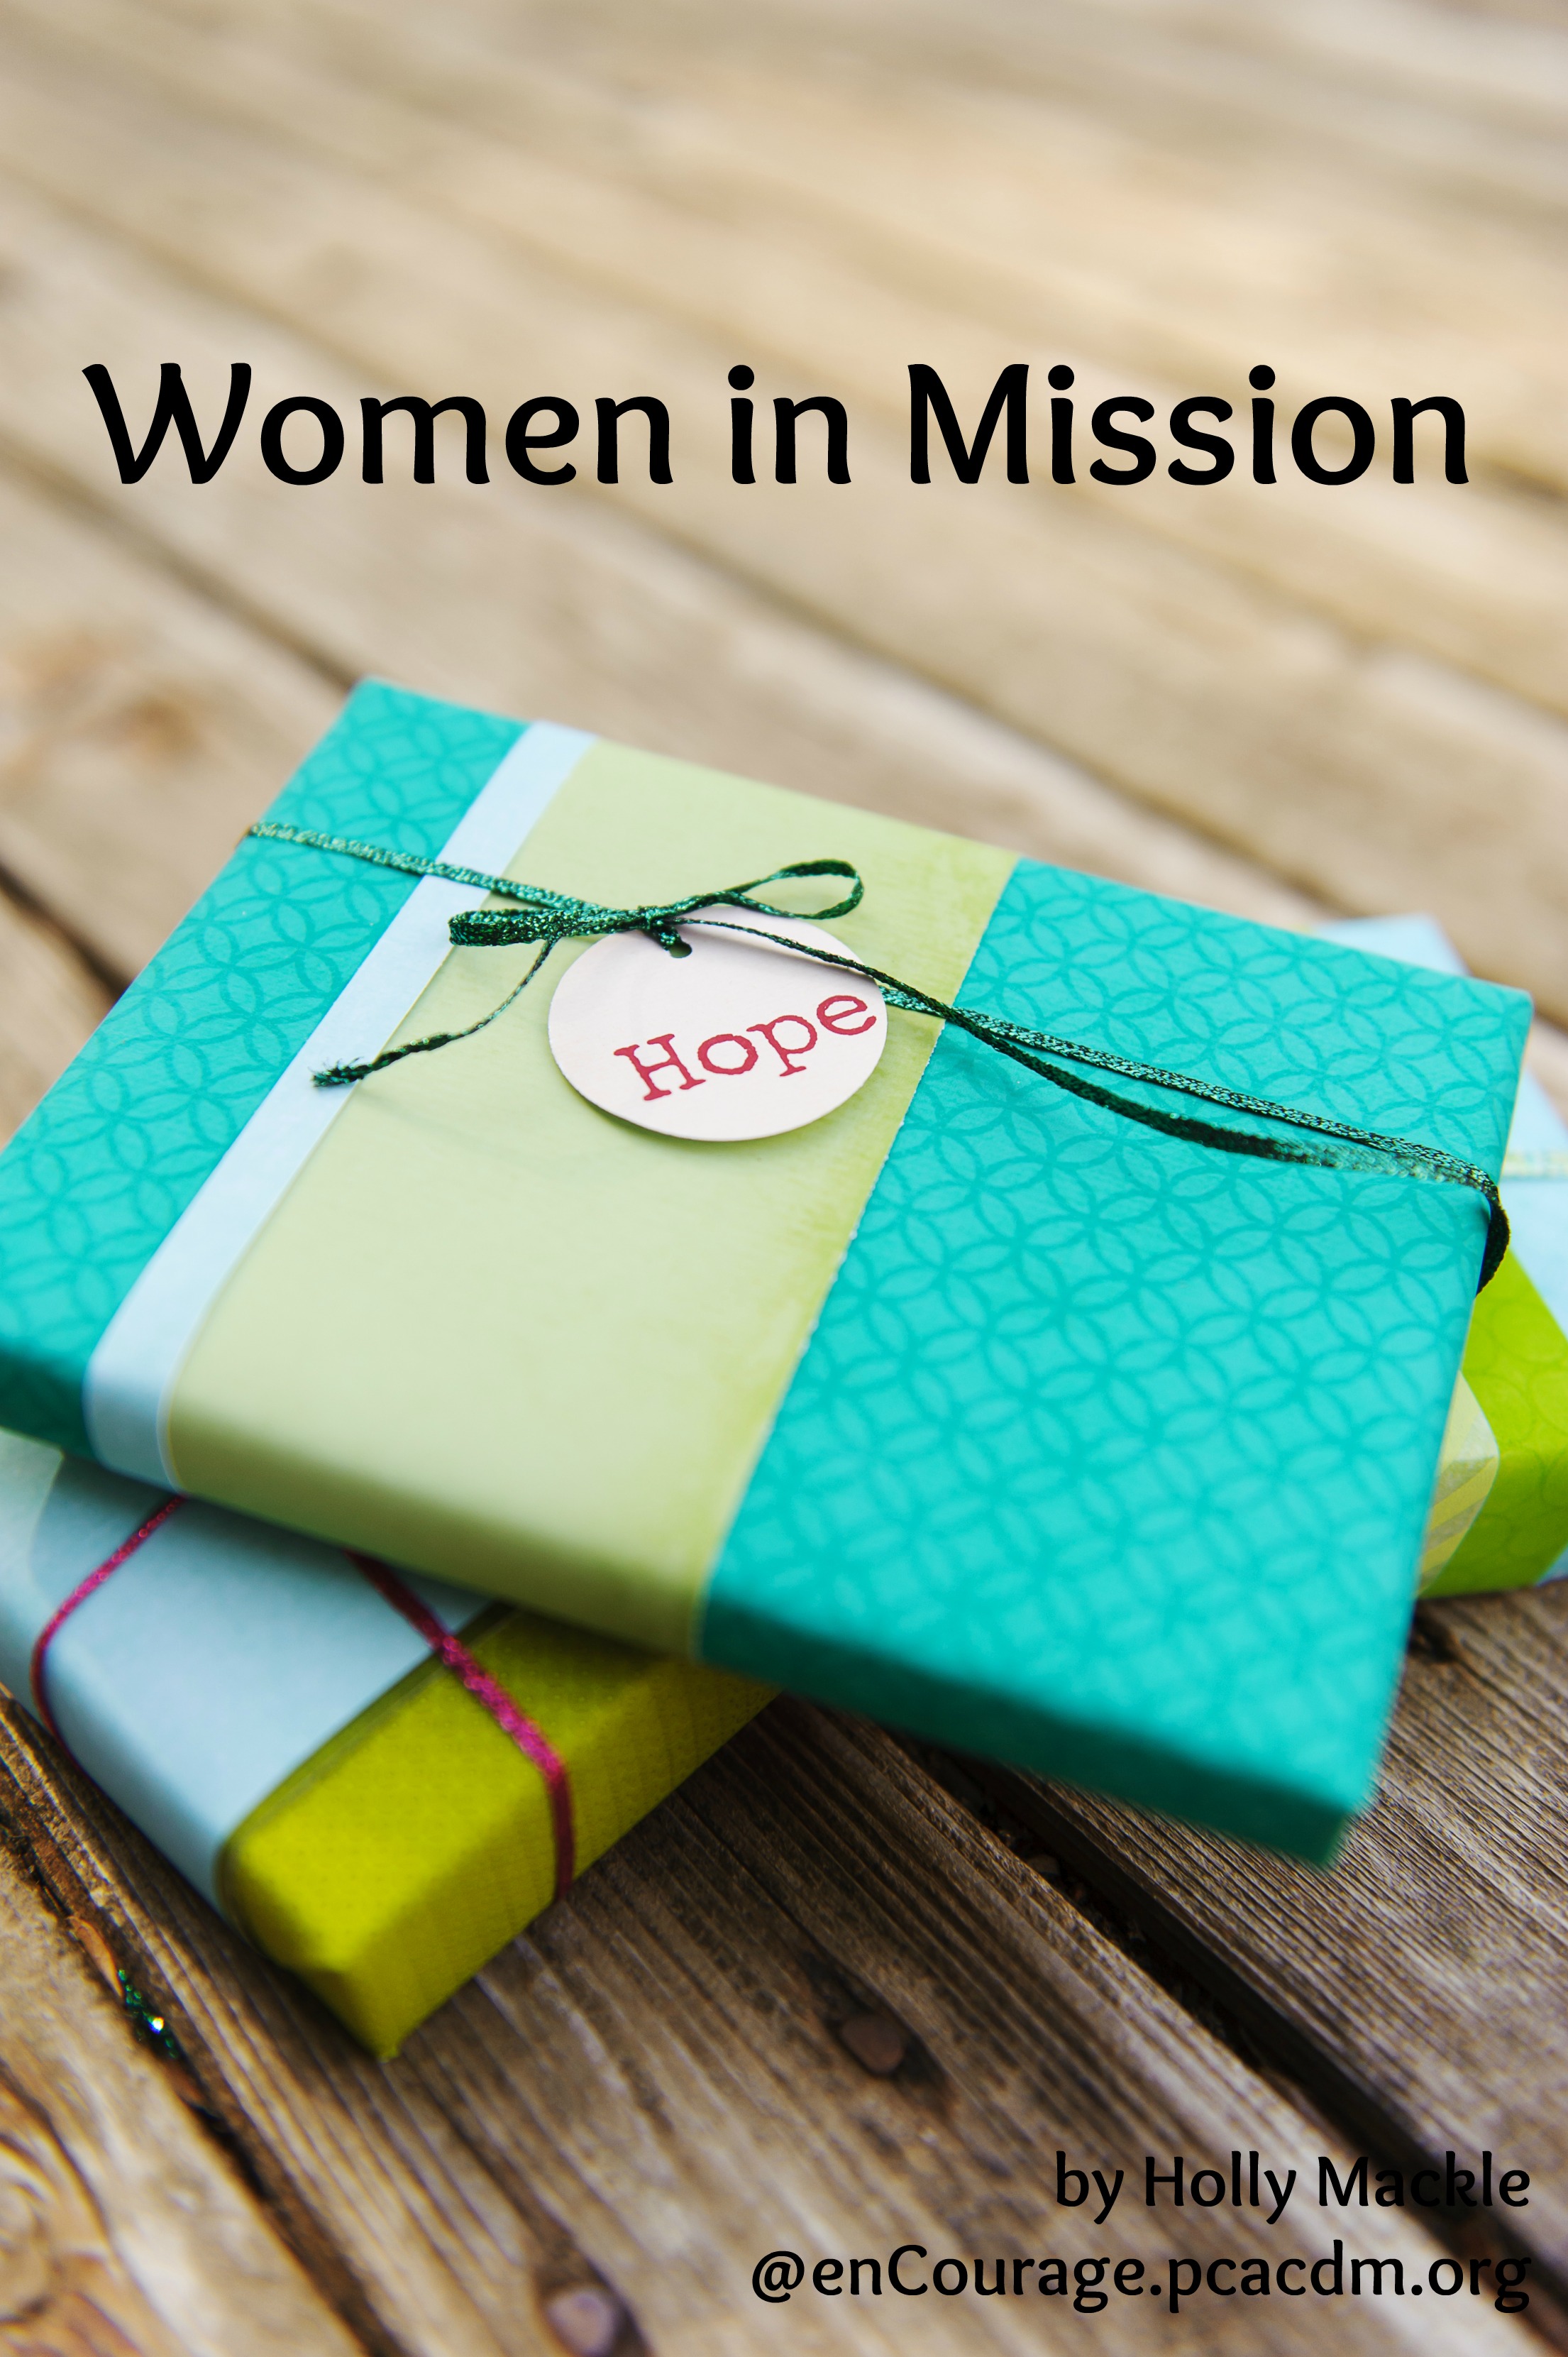 Women in Mission – Women.pcacdm.org